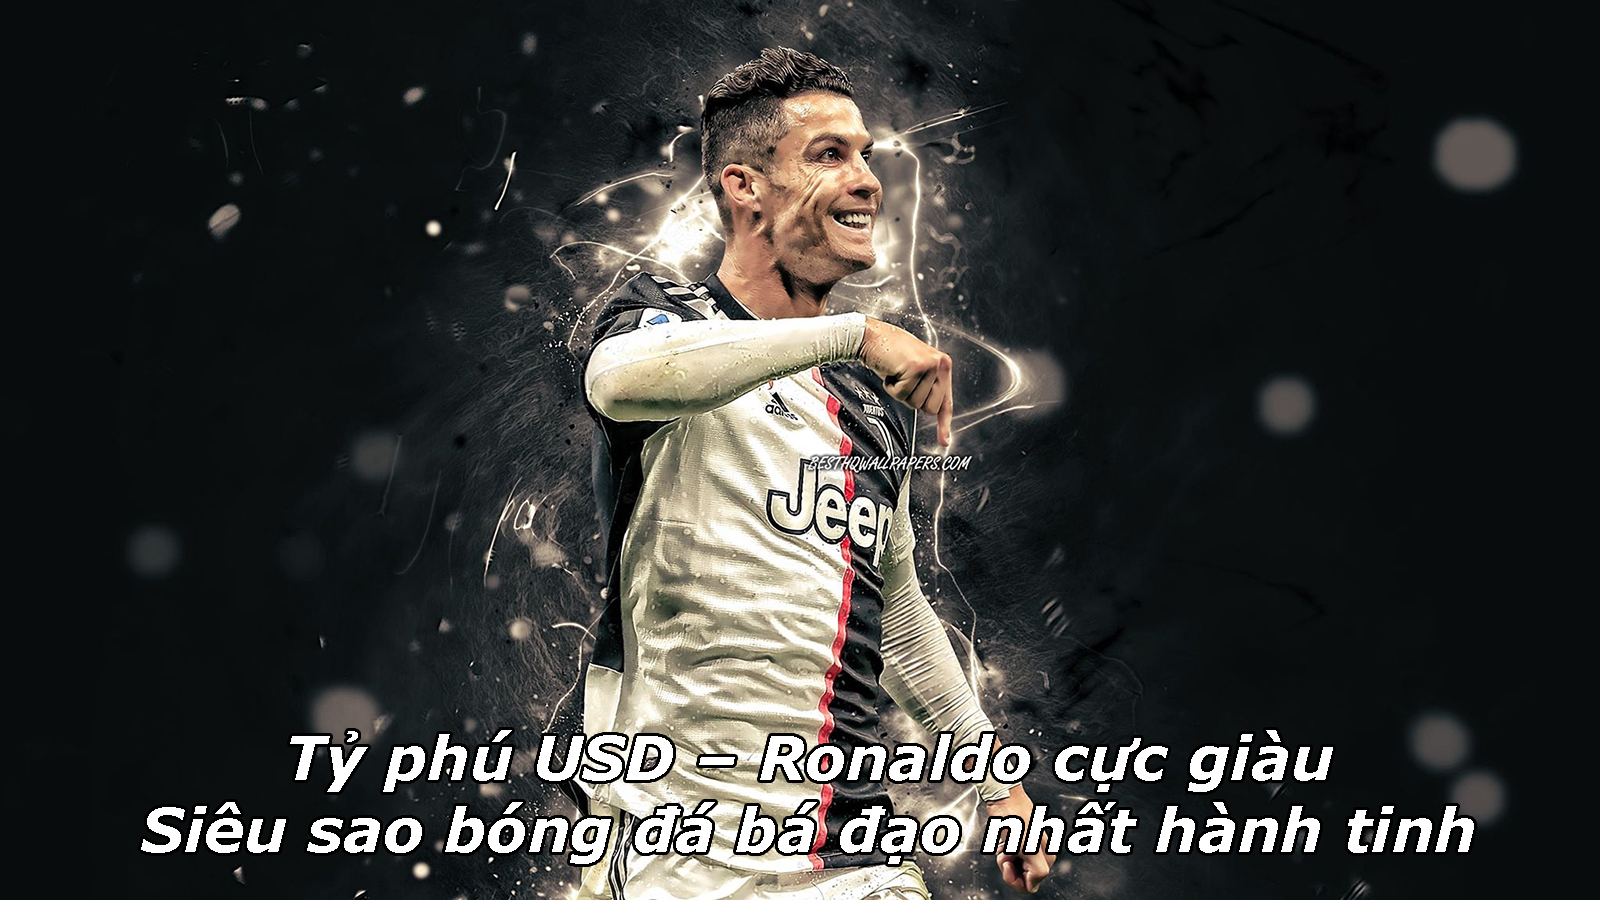 Ronaldo siêu sao đá bạo nhất hành tinh